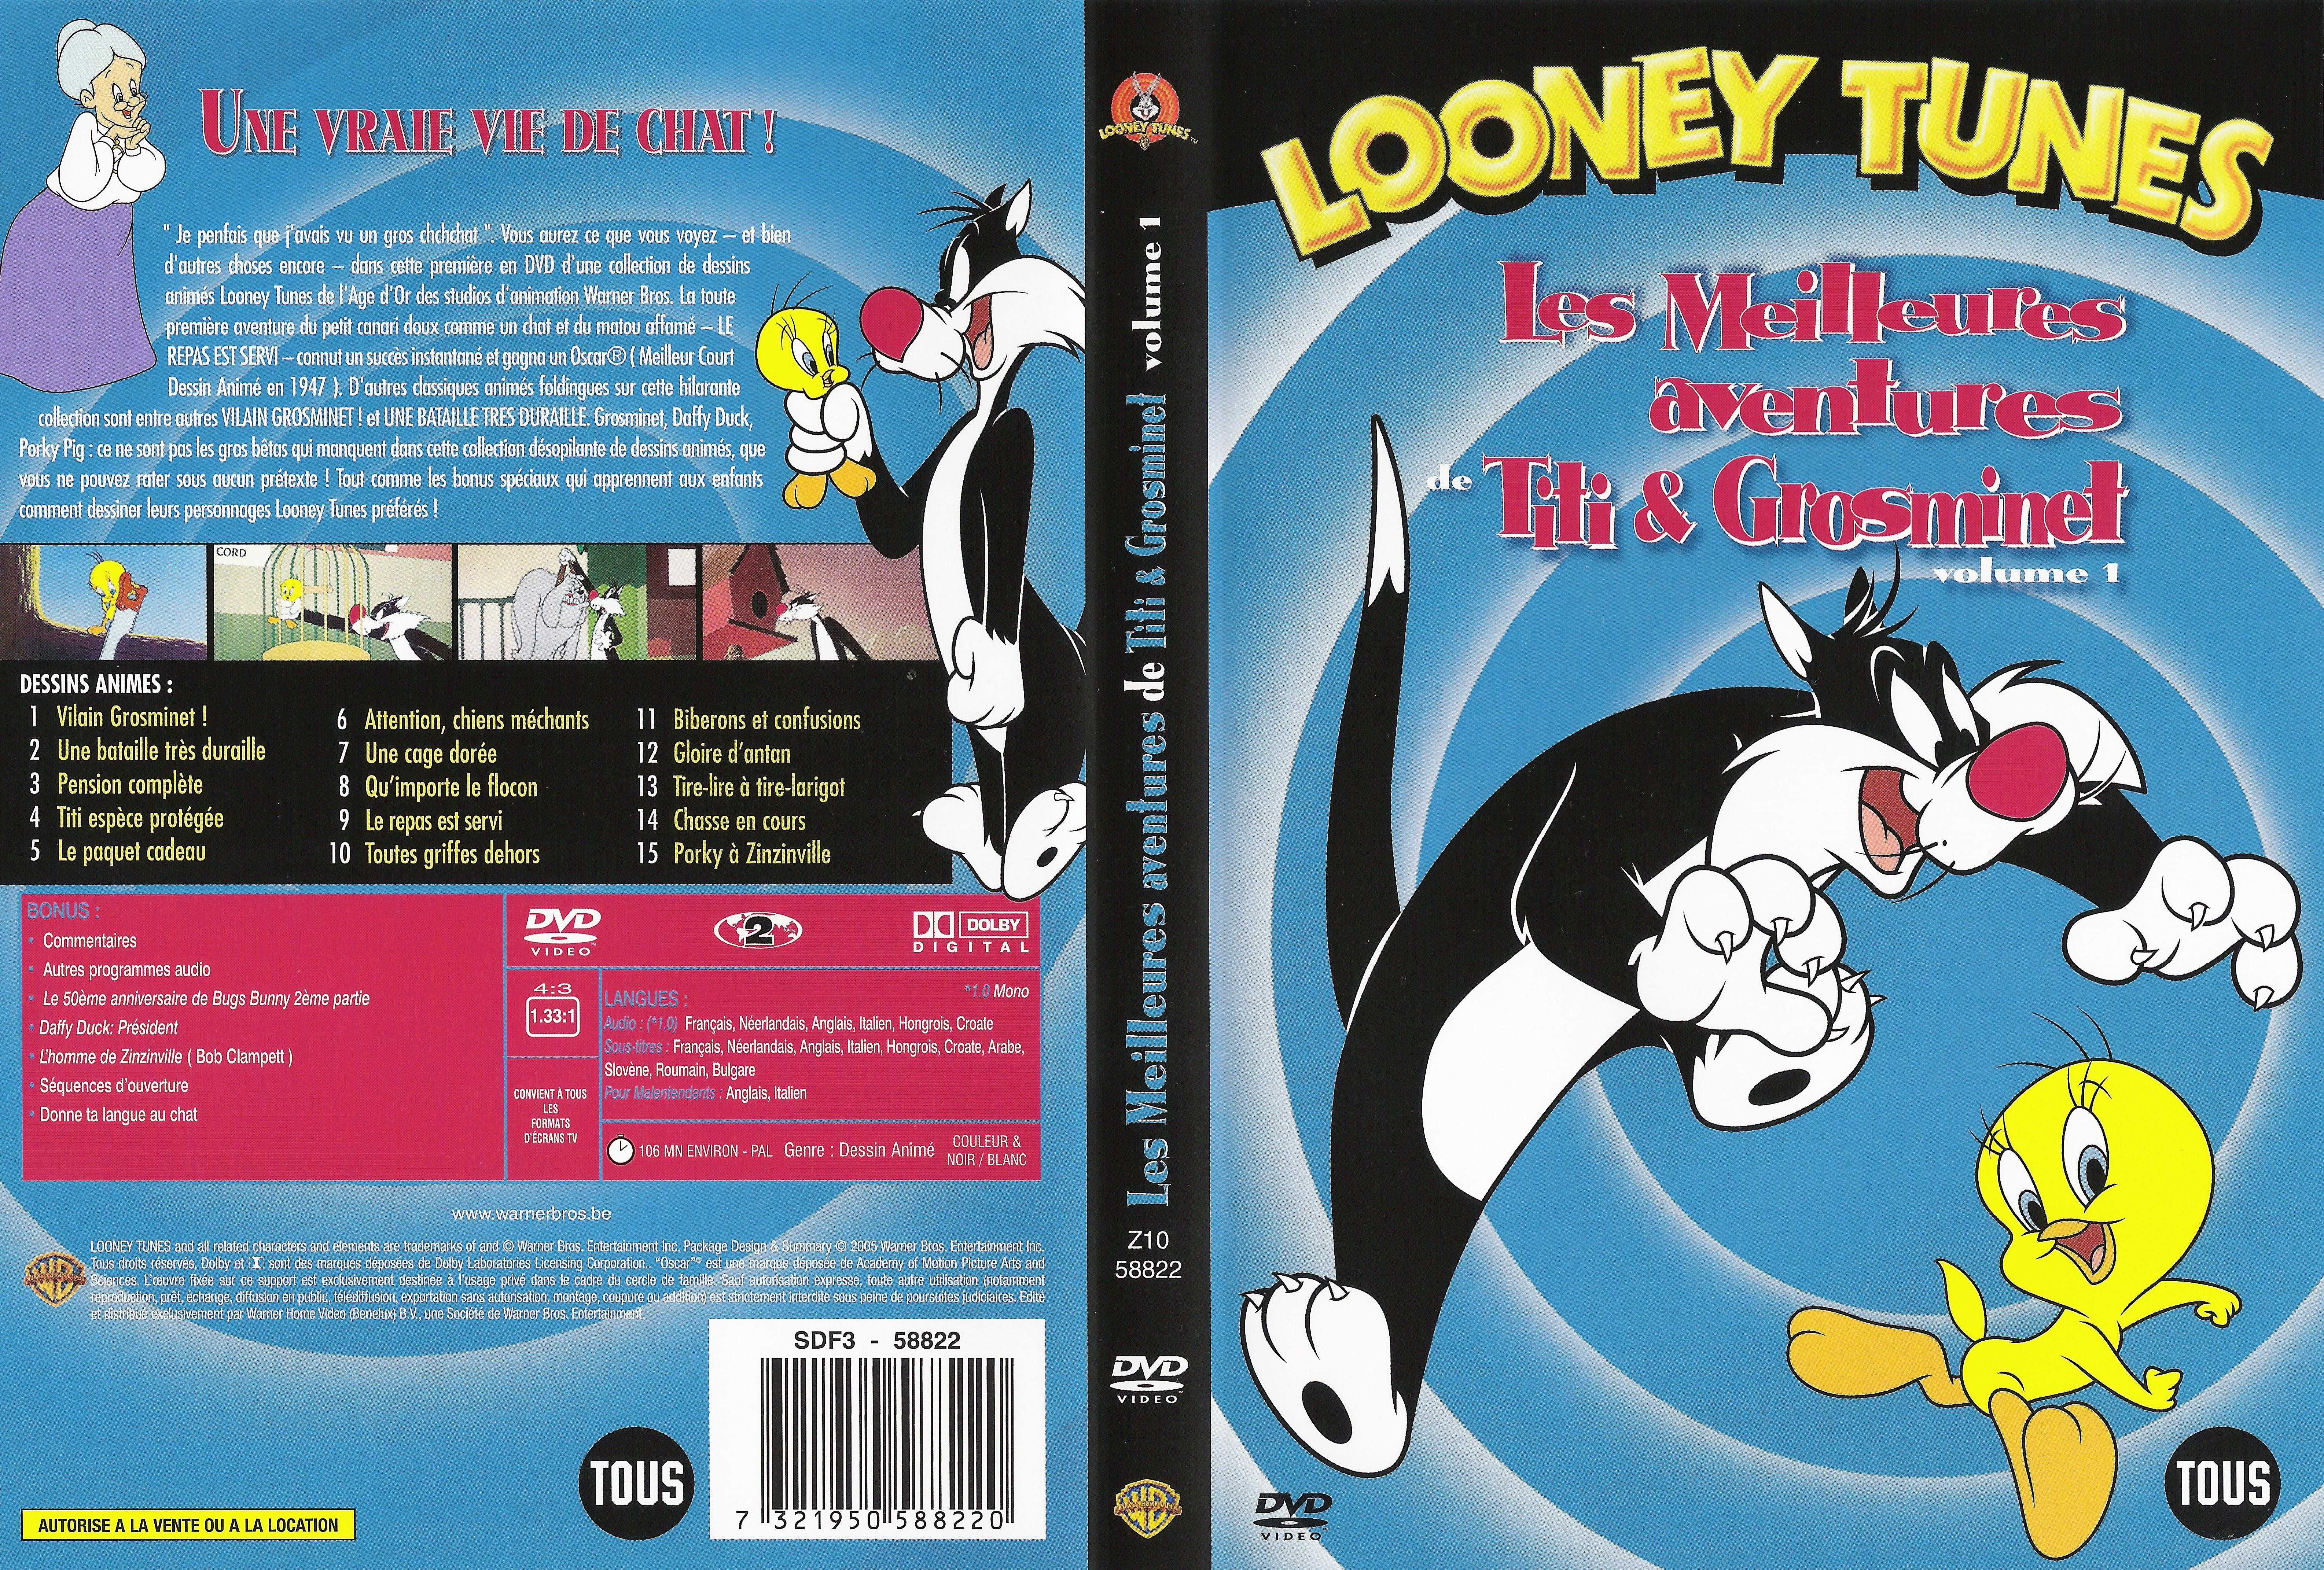 Jaquette DVD Looney Tunes - Les meilleures aventures de Titi et Grosminet - volume 1 v2